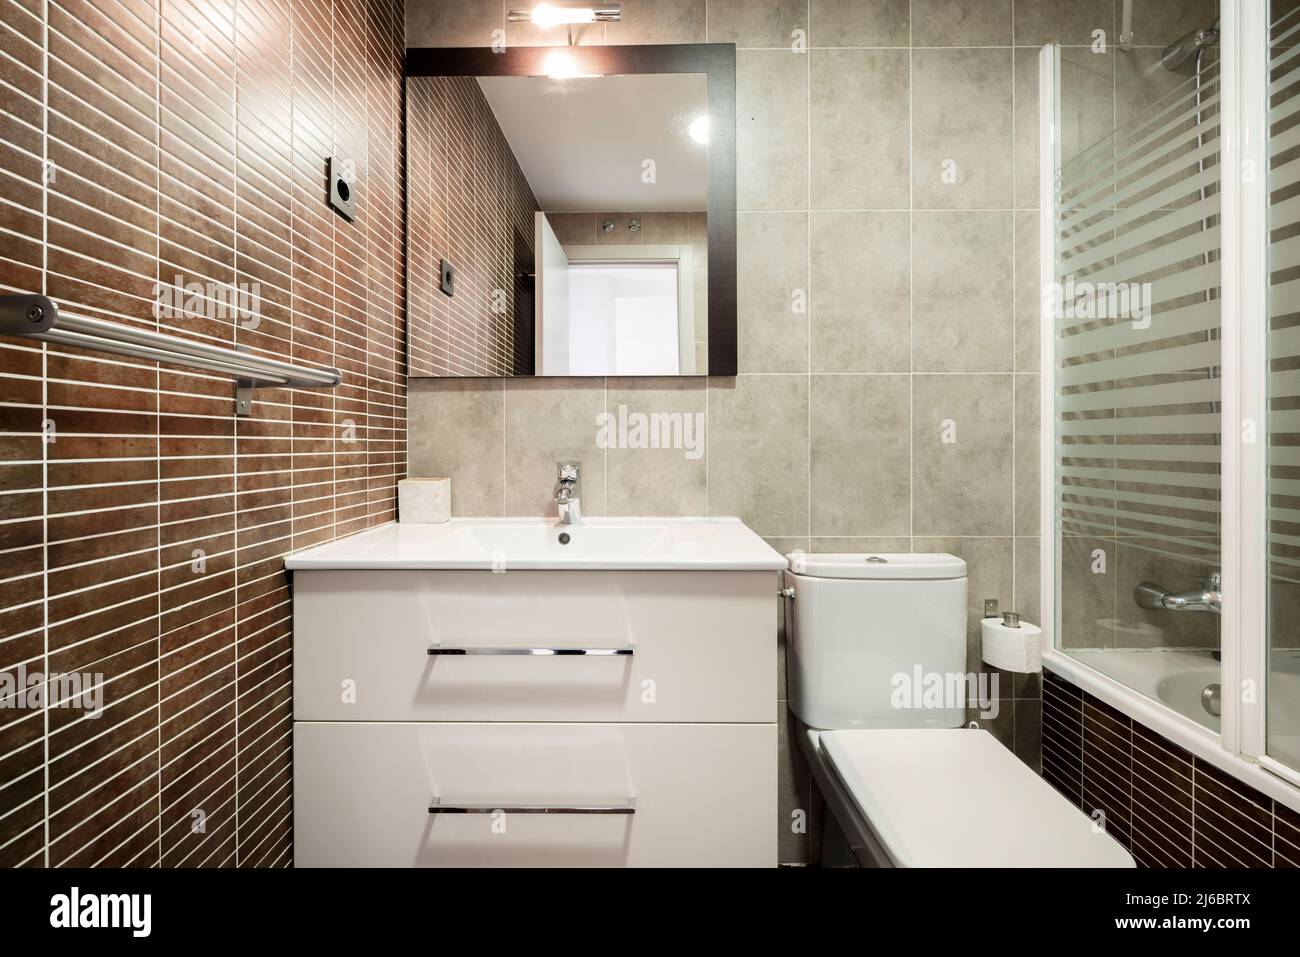 Baño con cabina de ducha espejo empotrado en pared cenefas de porcelanato y  lavabo sobre mueble de madera